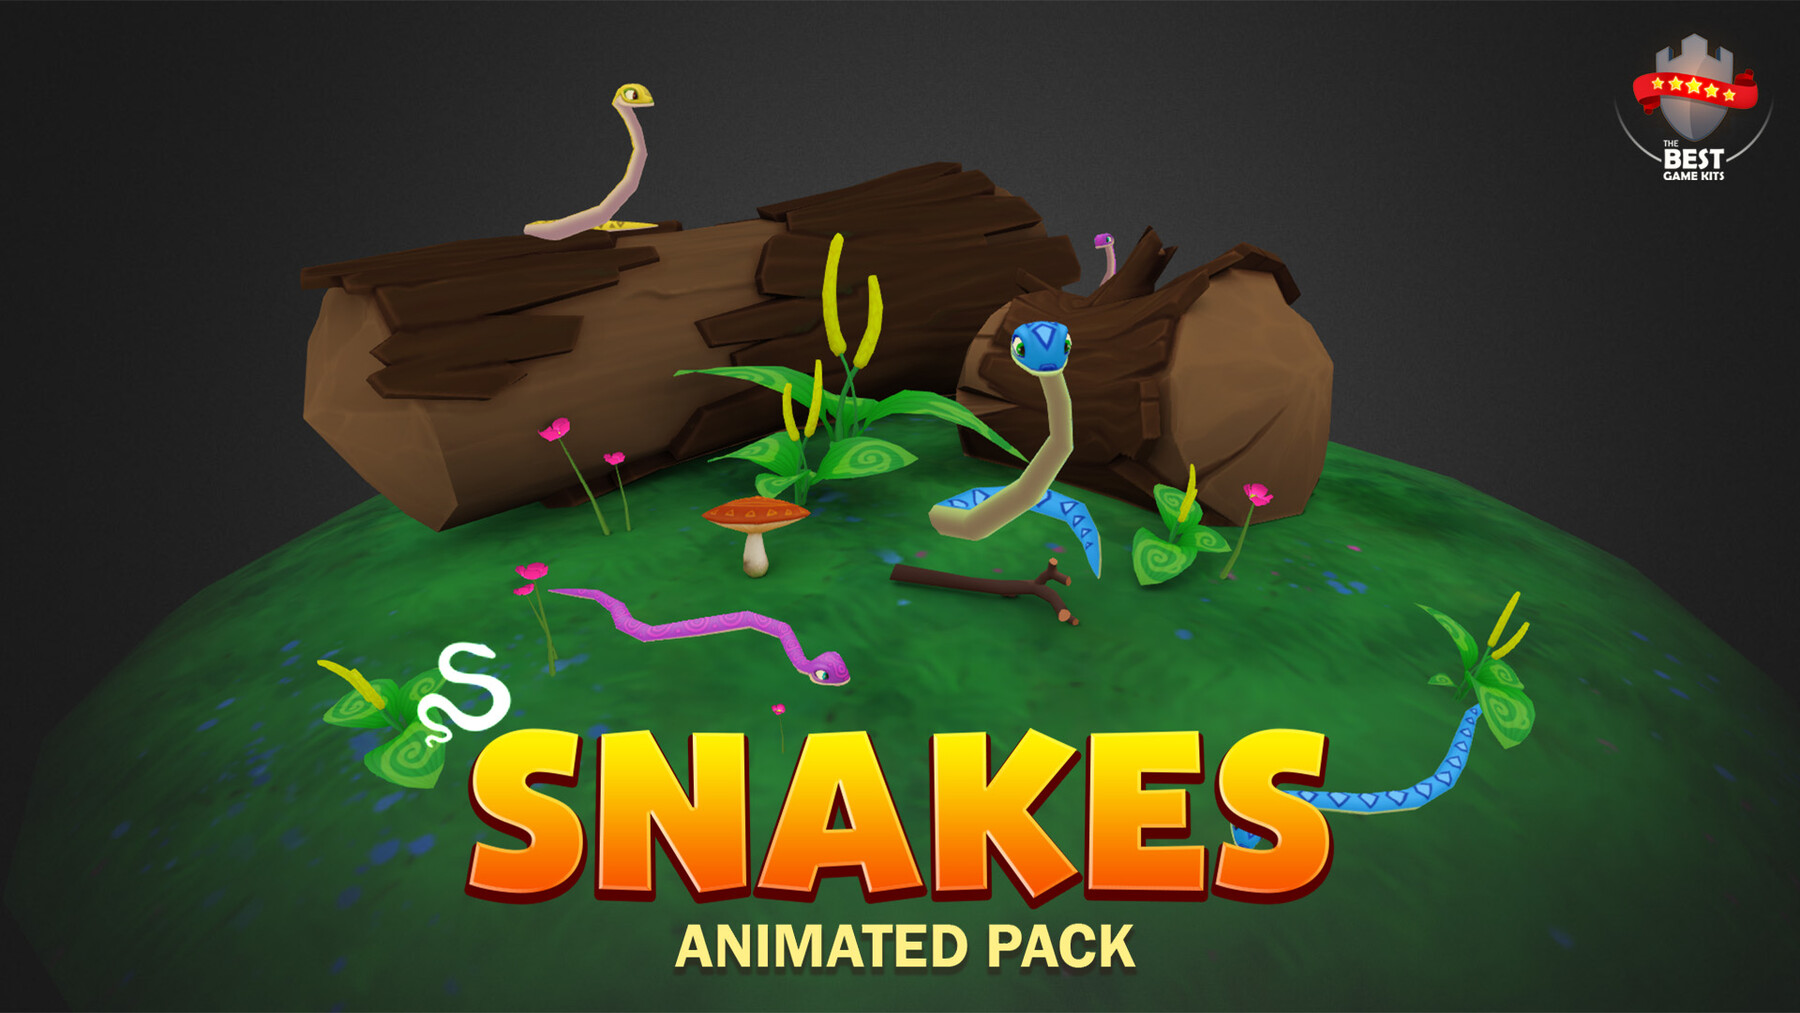 Snake game assets